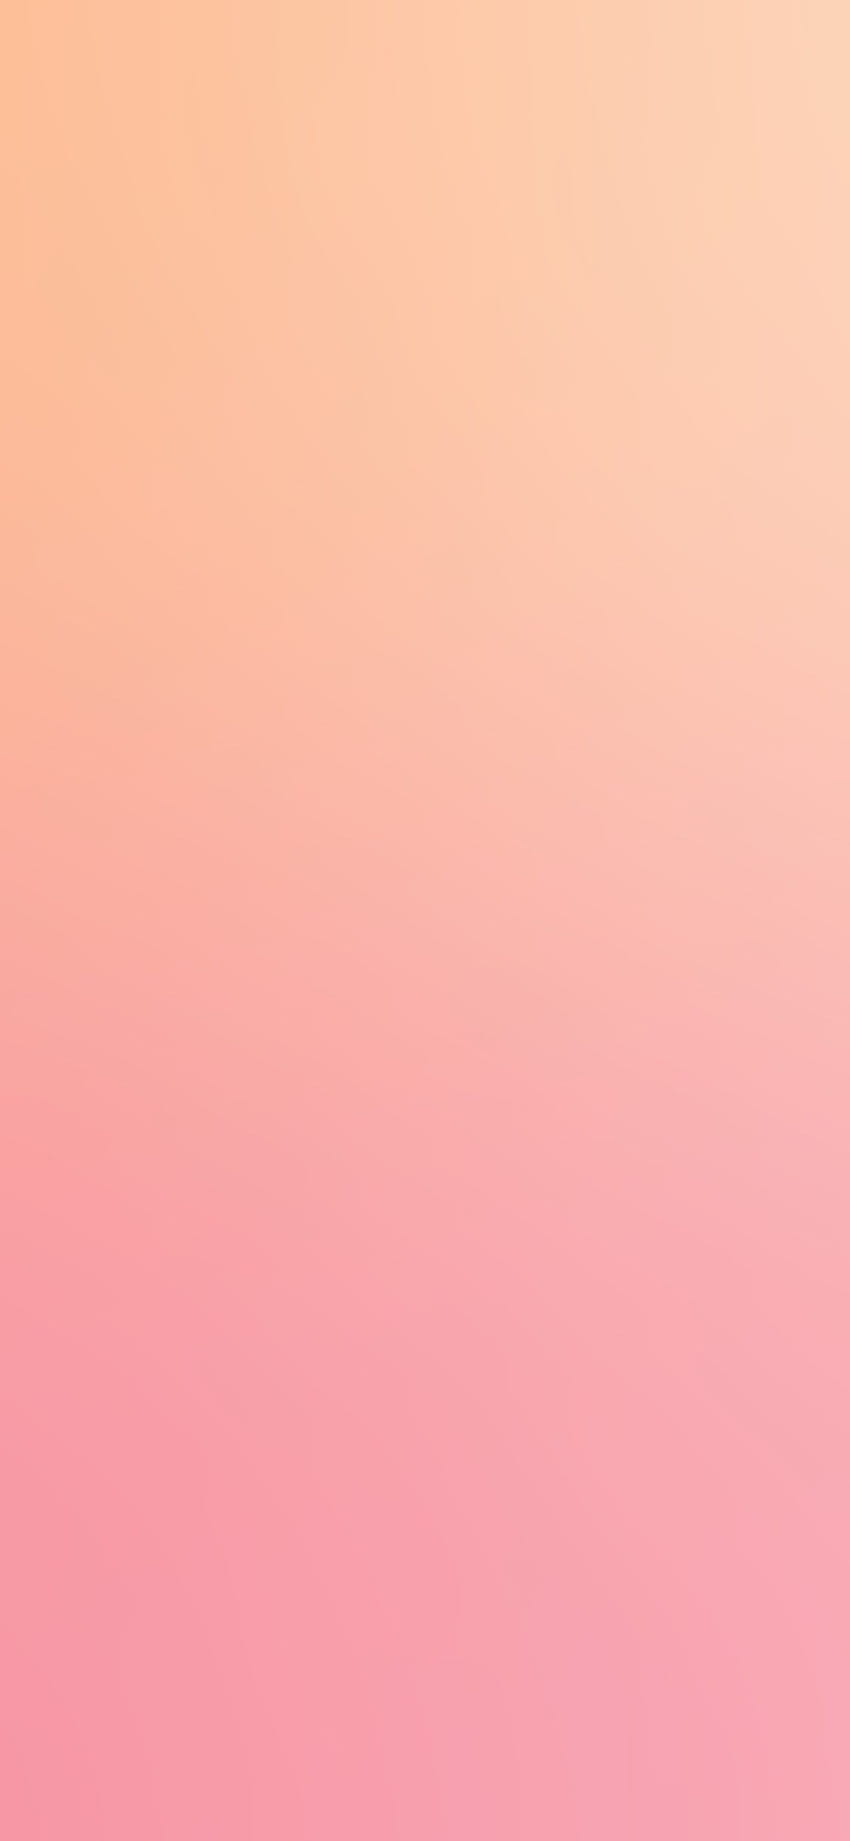 iPhoneX. gradación de desenfoque pastel suave rosa melocotón, Pastel Peach Aesthetic fondo de pantalla del teléfono